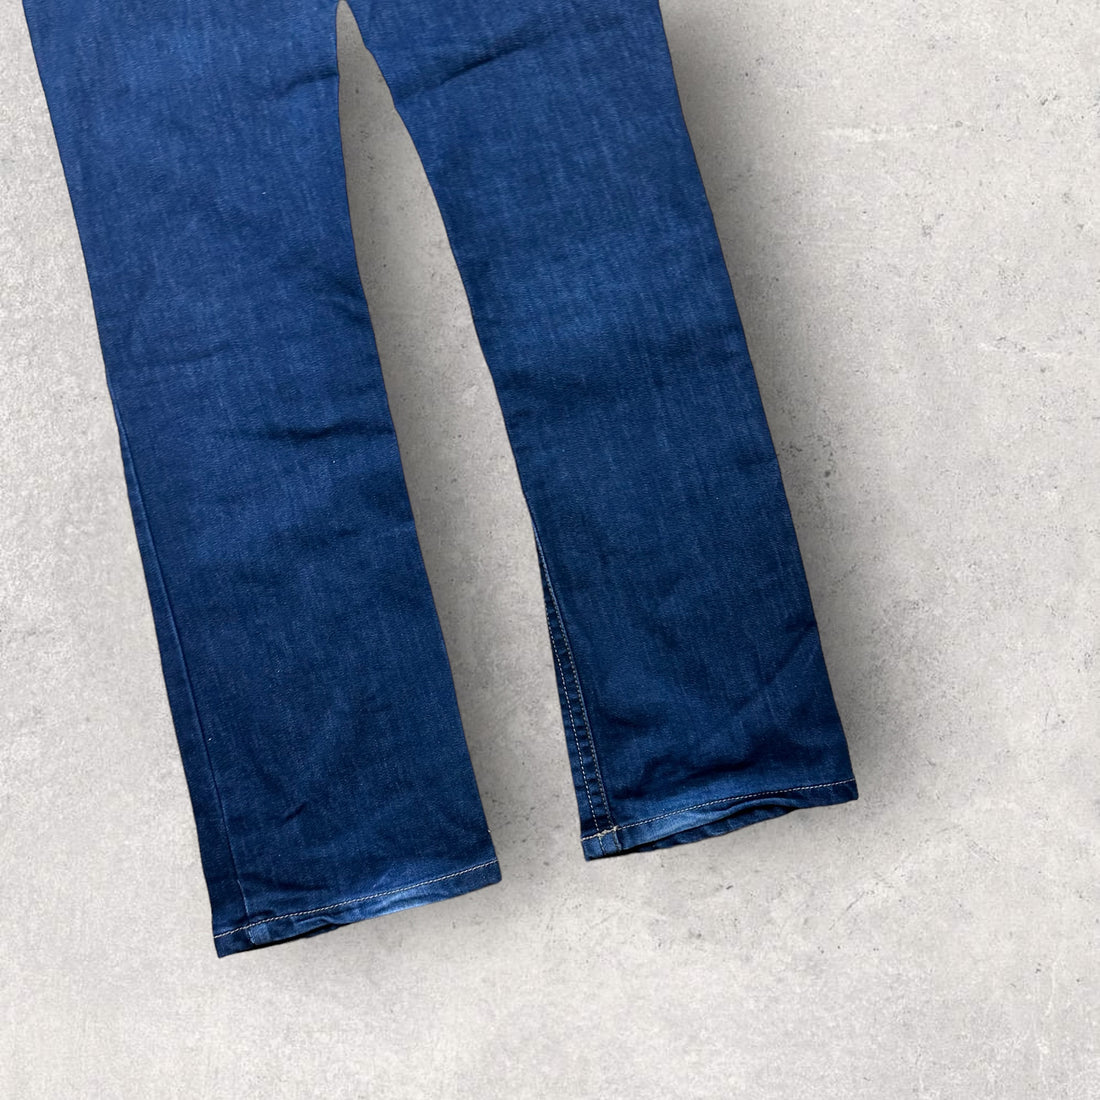 Vintage Armani Jeans (31)